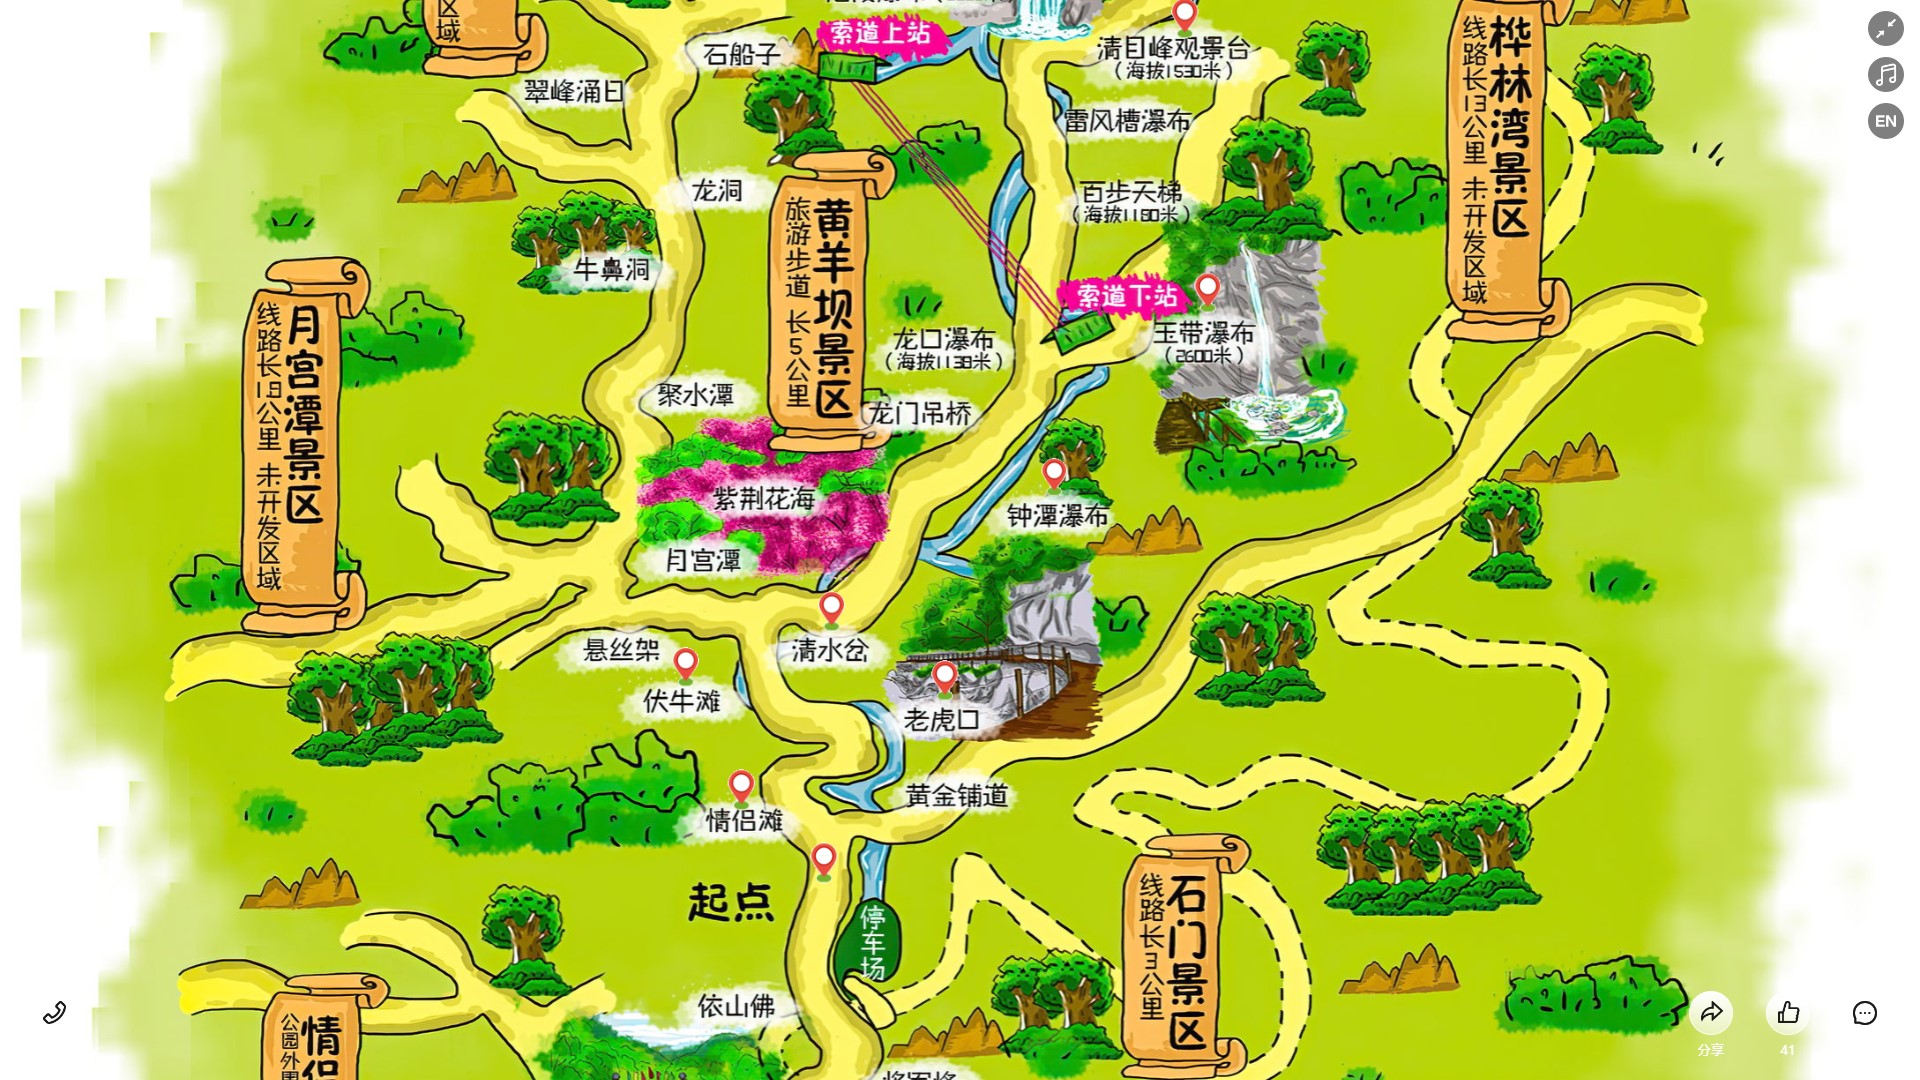 锦州景区导览系统